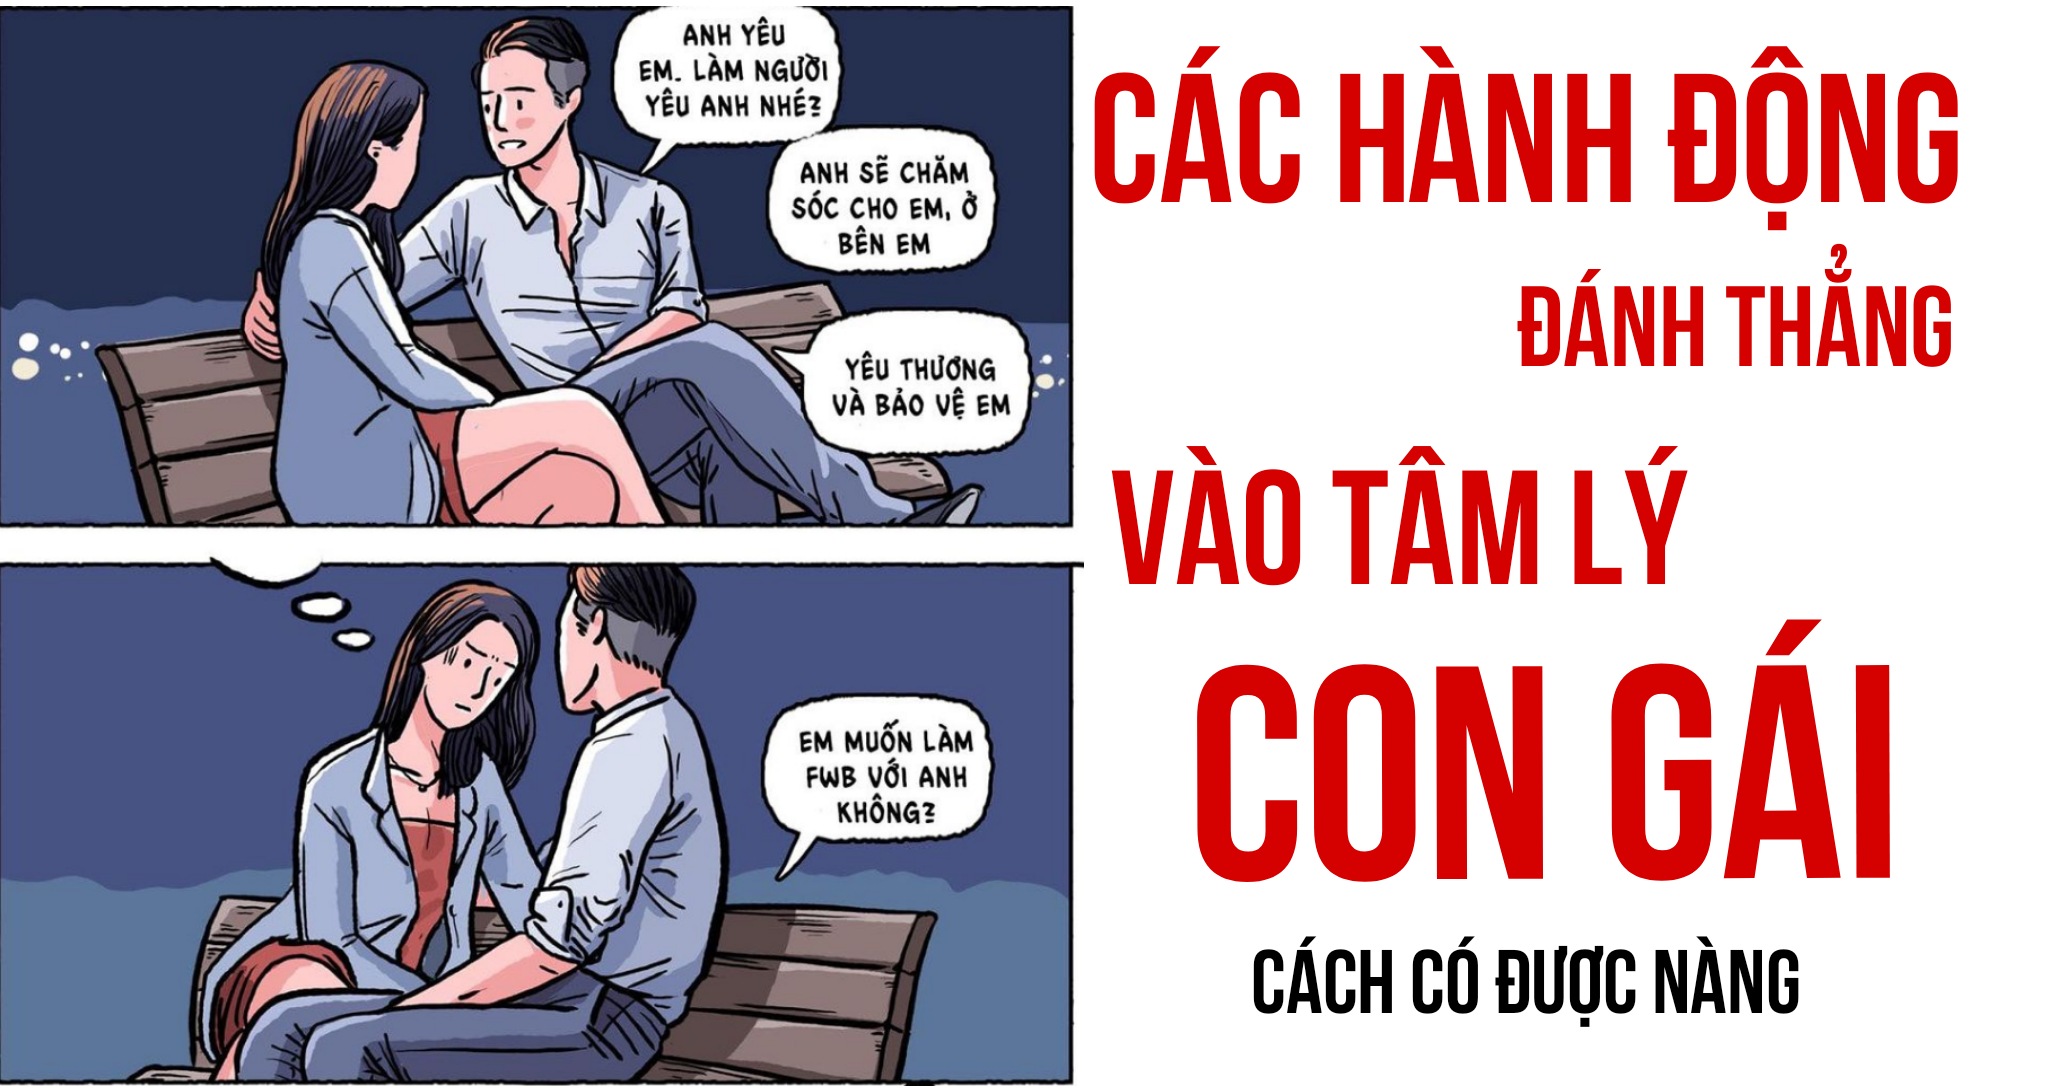 Cac Hanh Dong Danh Thang Vao Tam Ly Cua Con Gai